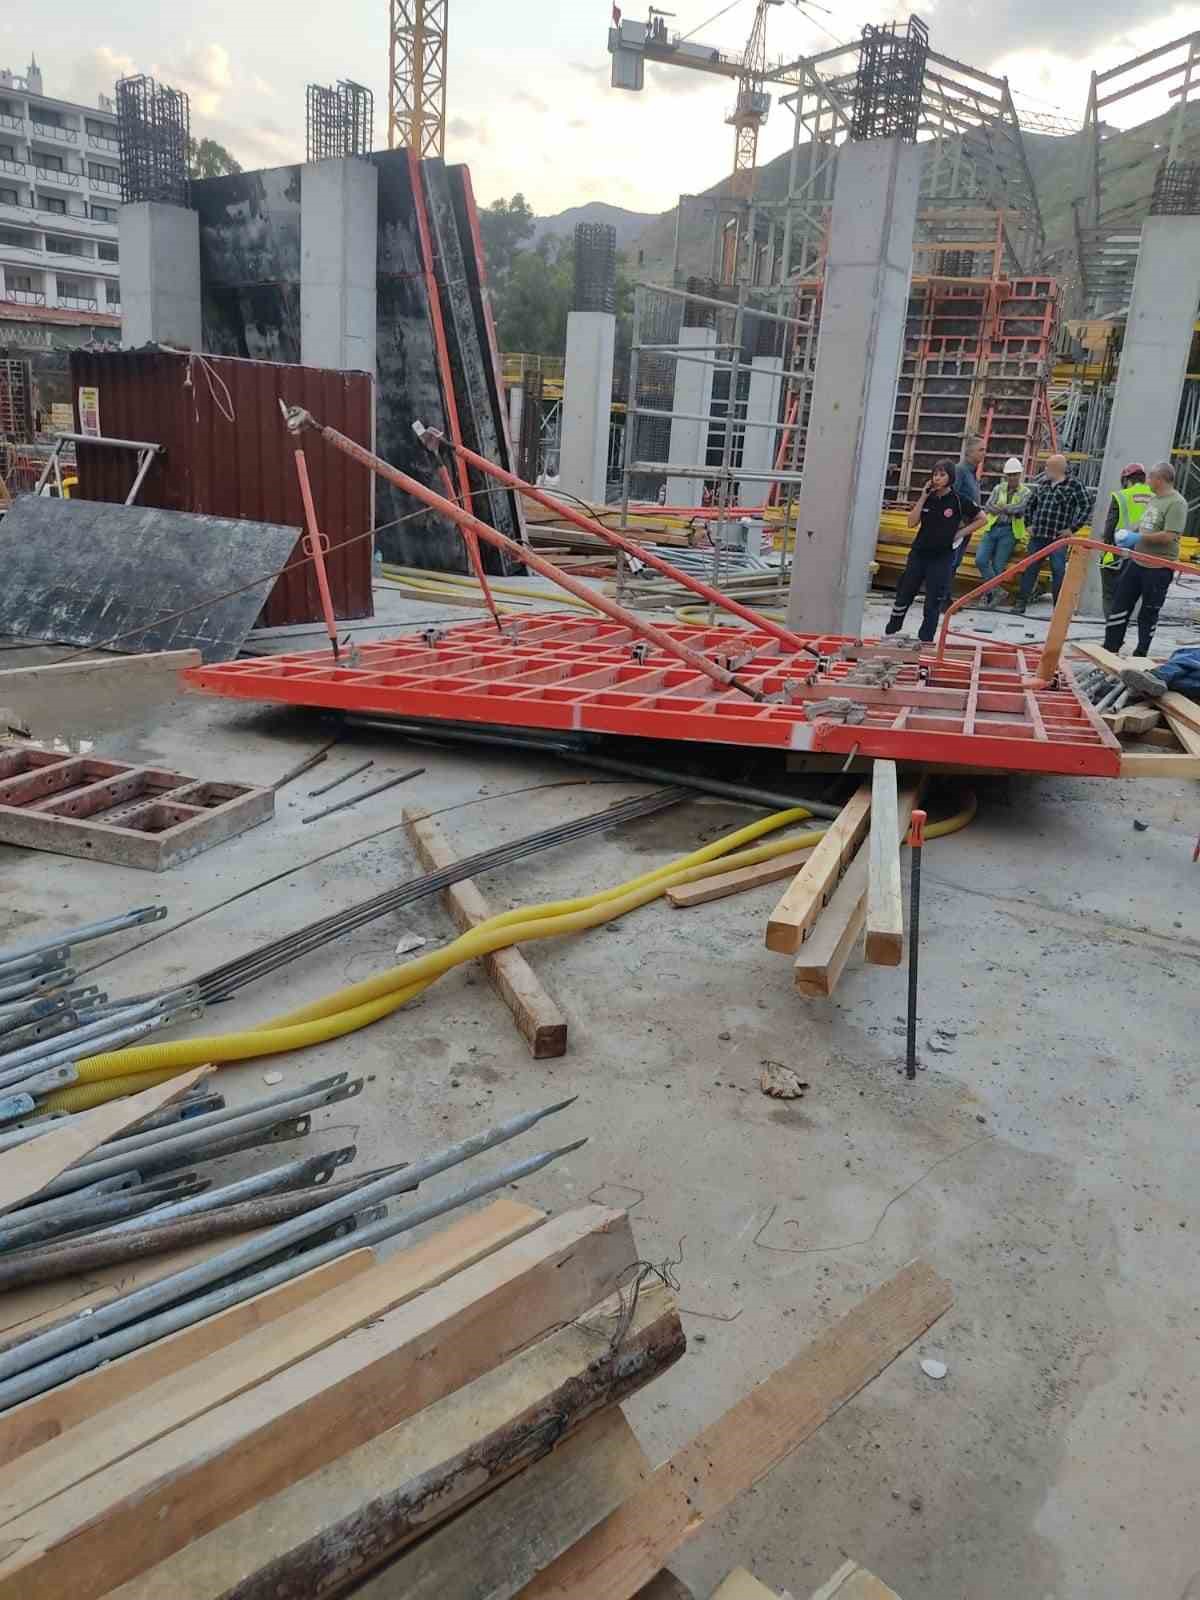 Marmaris’teki inşaat kazasında 1 işçinin öldüğü davada adli süreç başladı
